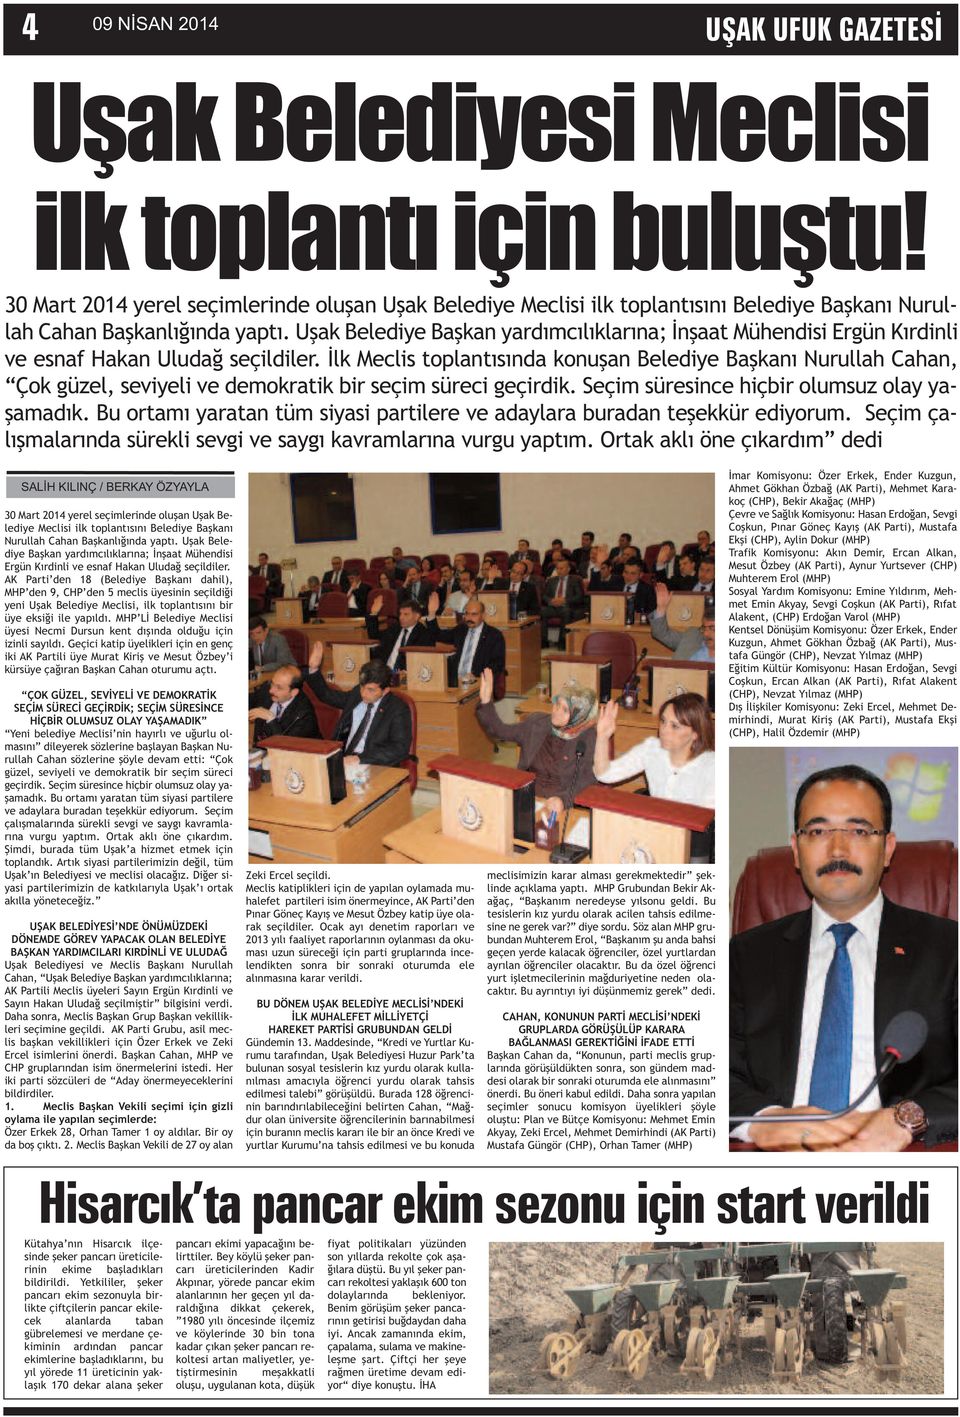 Uşak Belediye Başkan yardımcılıklarına; İnşaat Mühendisi Ergün Kırdinli ve esnaf Hakan Uludağ seçildiler.